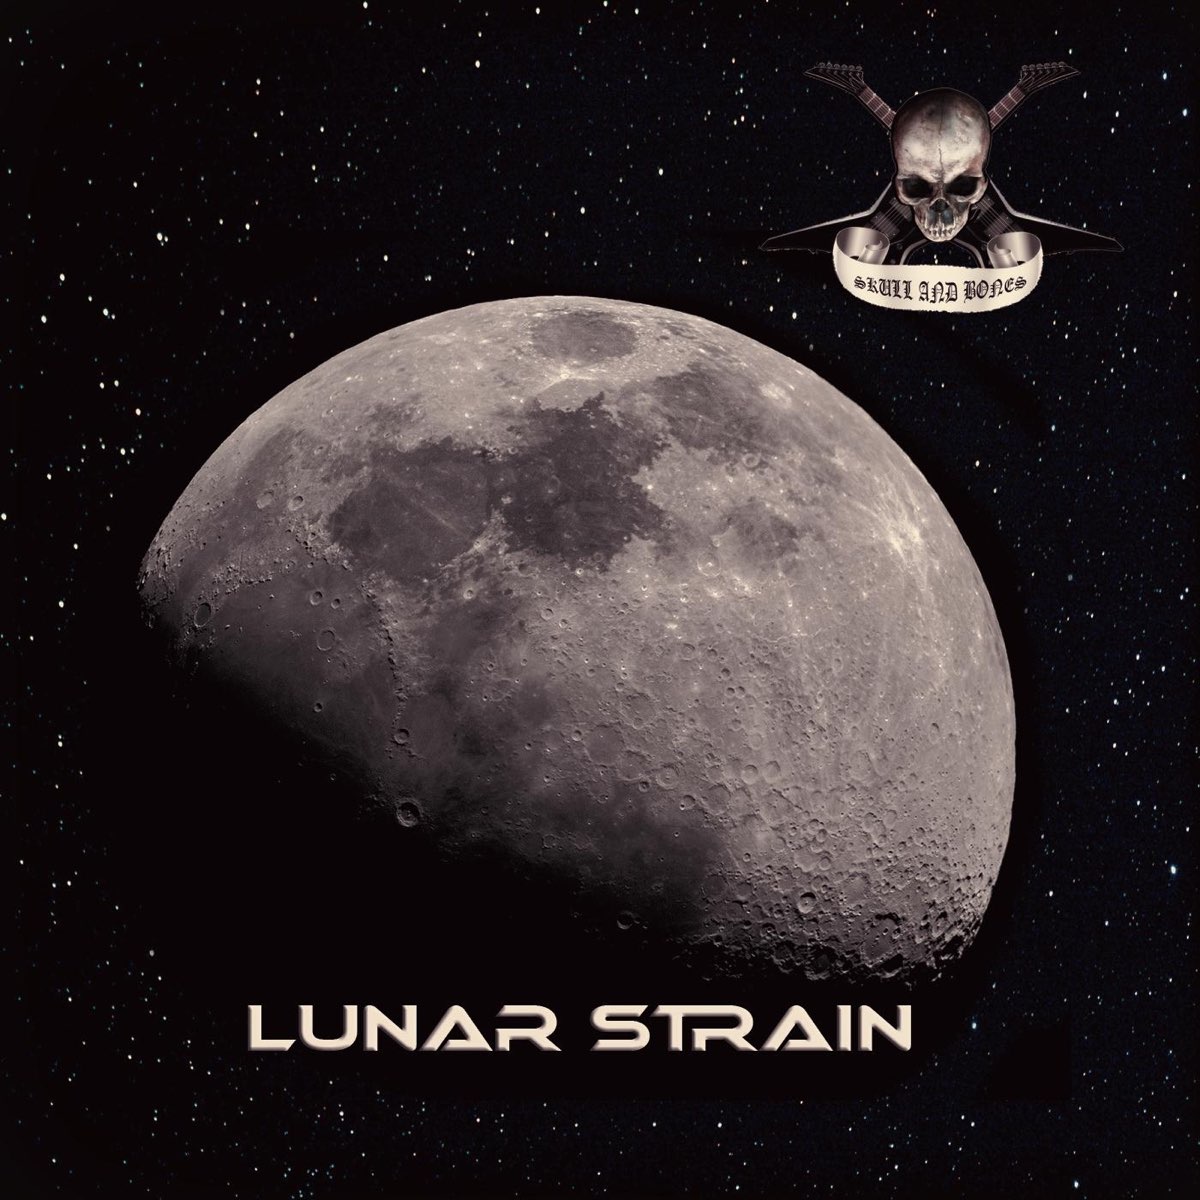 Bones take. Lunar. In Flames Lunar strain & Subterranean.